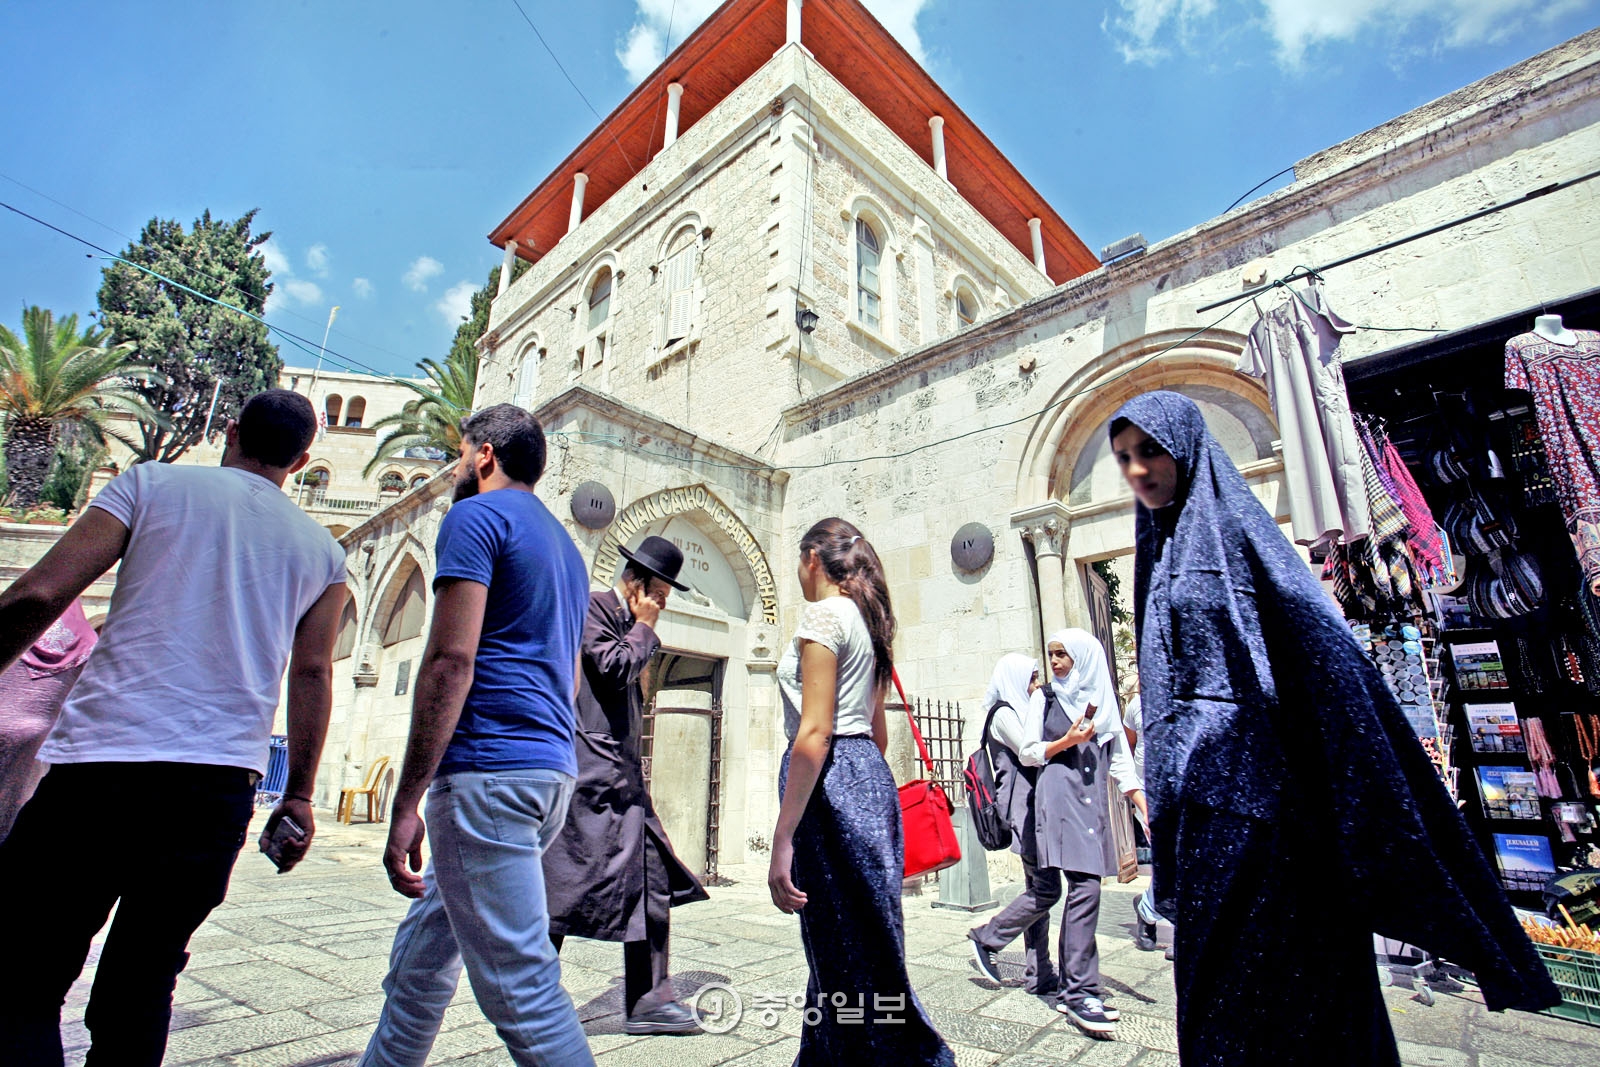 올드시티의 골목 풍경. 기독교 교회 앞으로 정통 복장을 한 유대인과 아랍인이 스쳐 지나가고 있다.